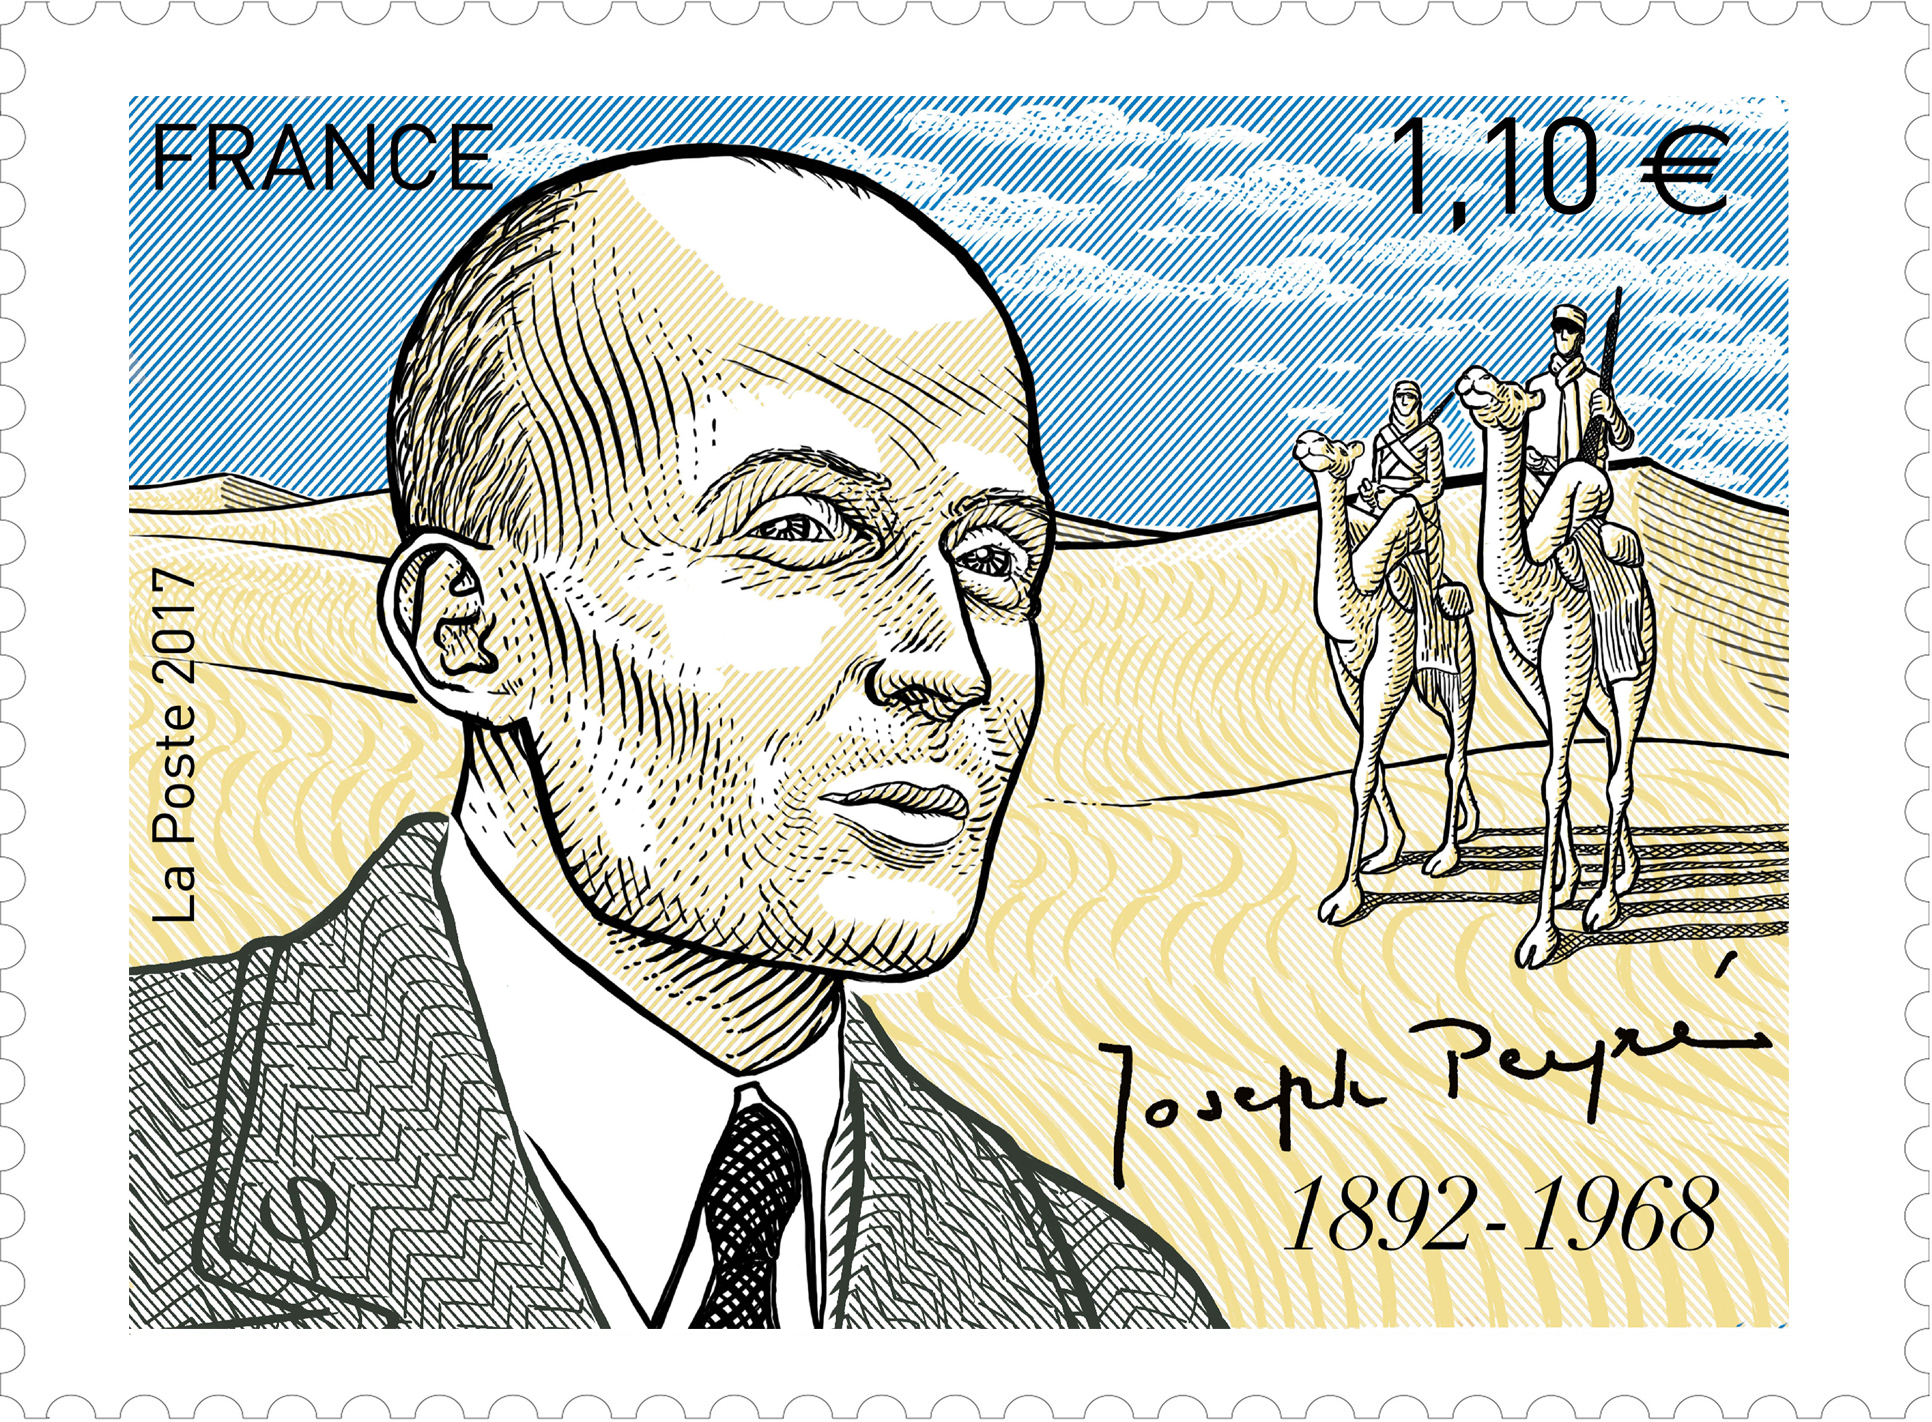 Joseph Peyré 1892 - 1968